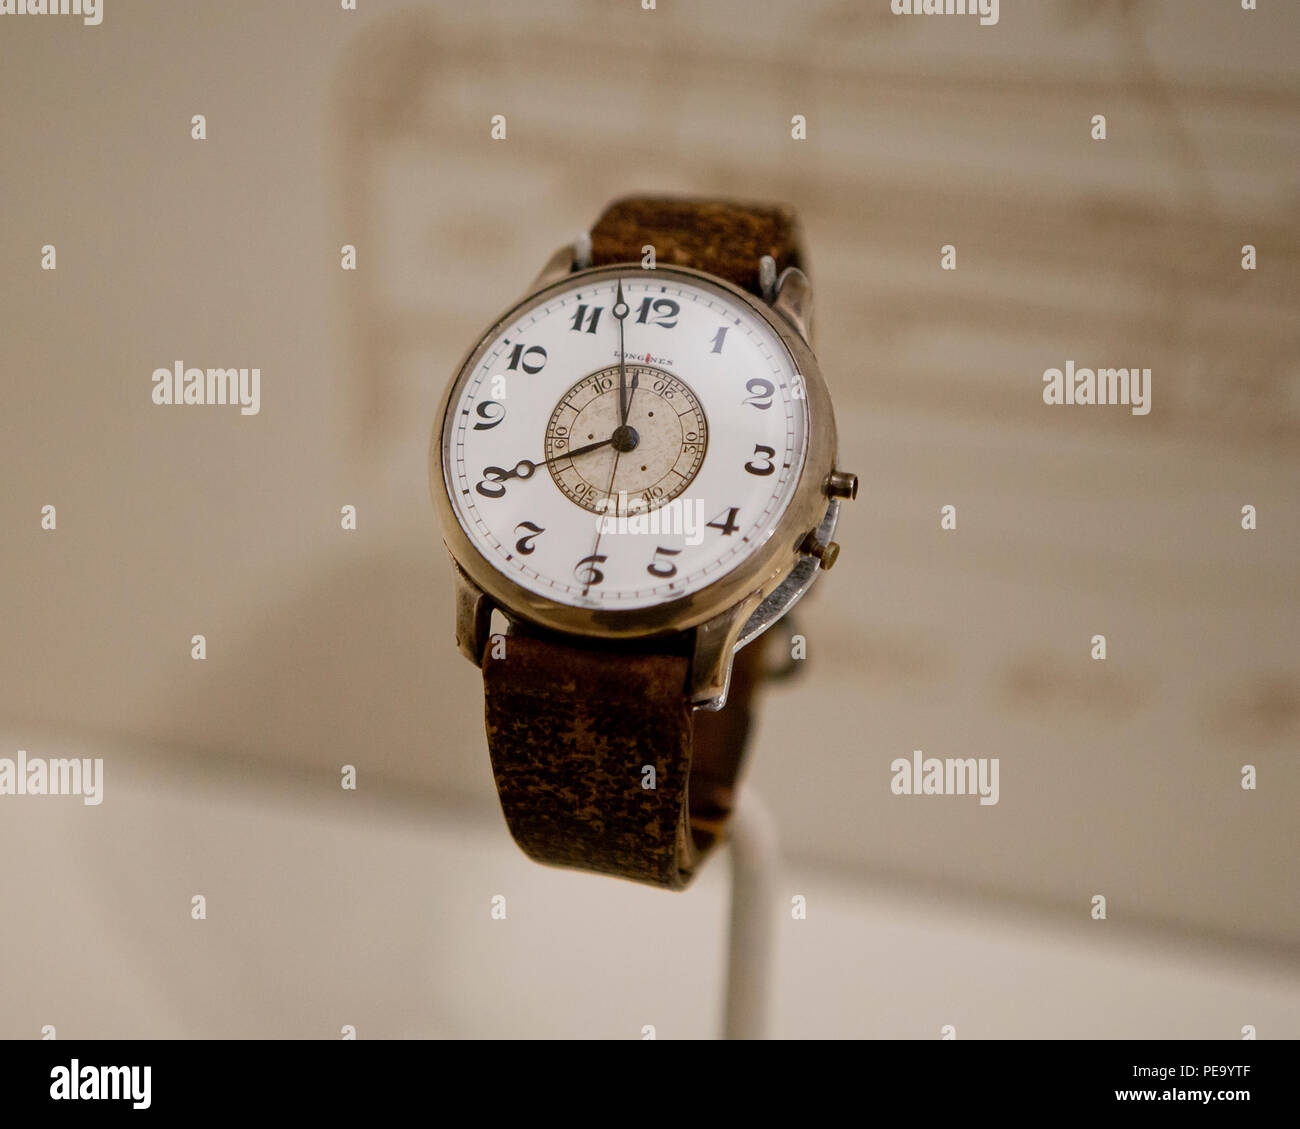 Longines-Wittnauer Weems zweite - Einstellung der Uhr (armbanduhr). Stockfoto